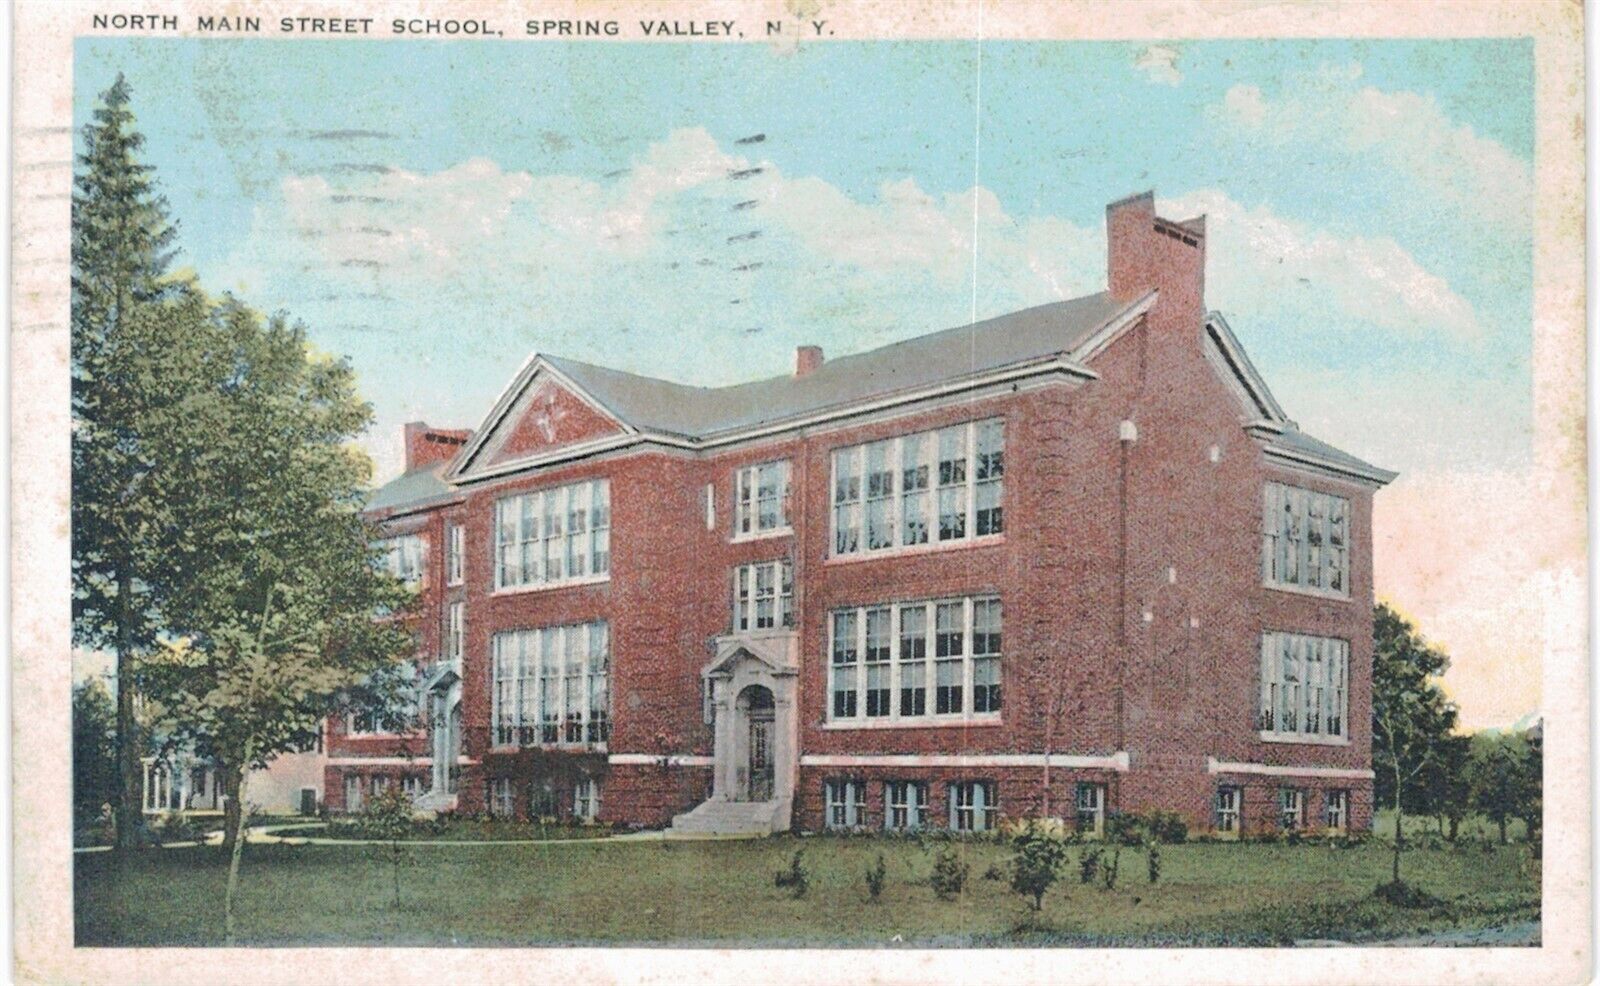 Spring Valley North Main Street School 1920 NY 